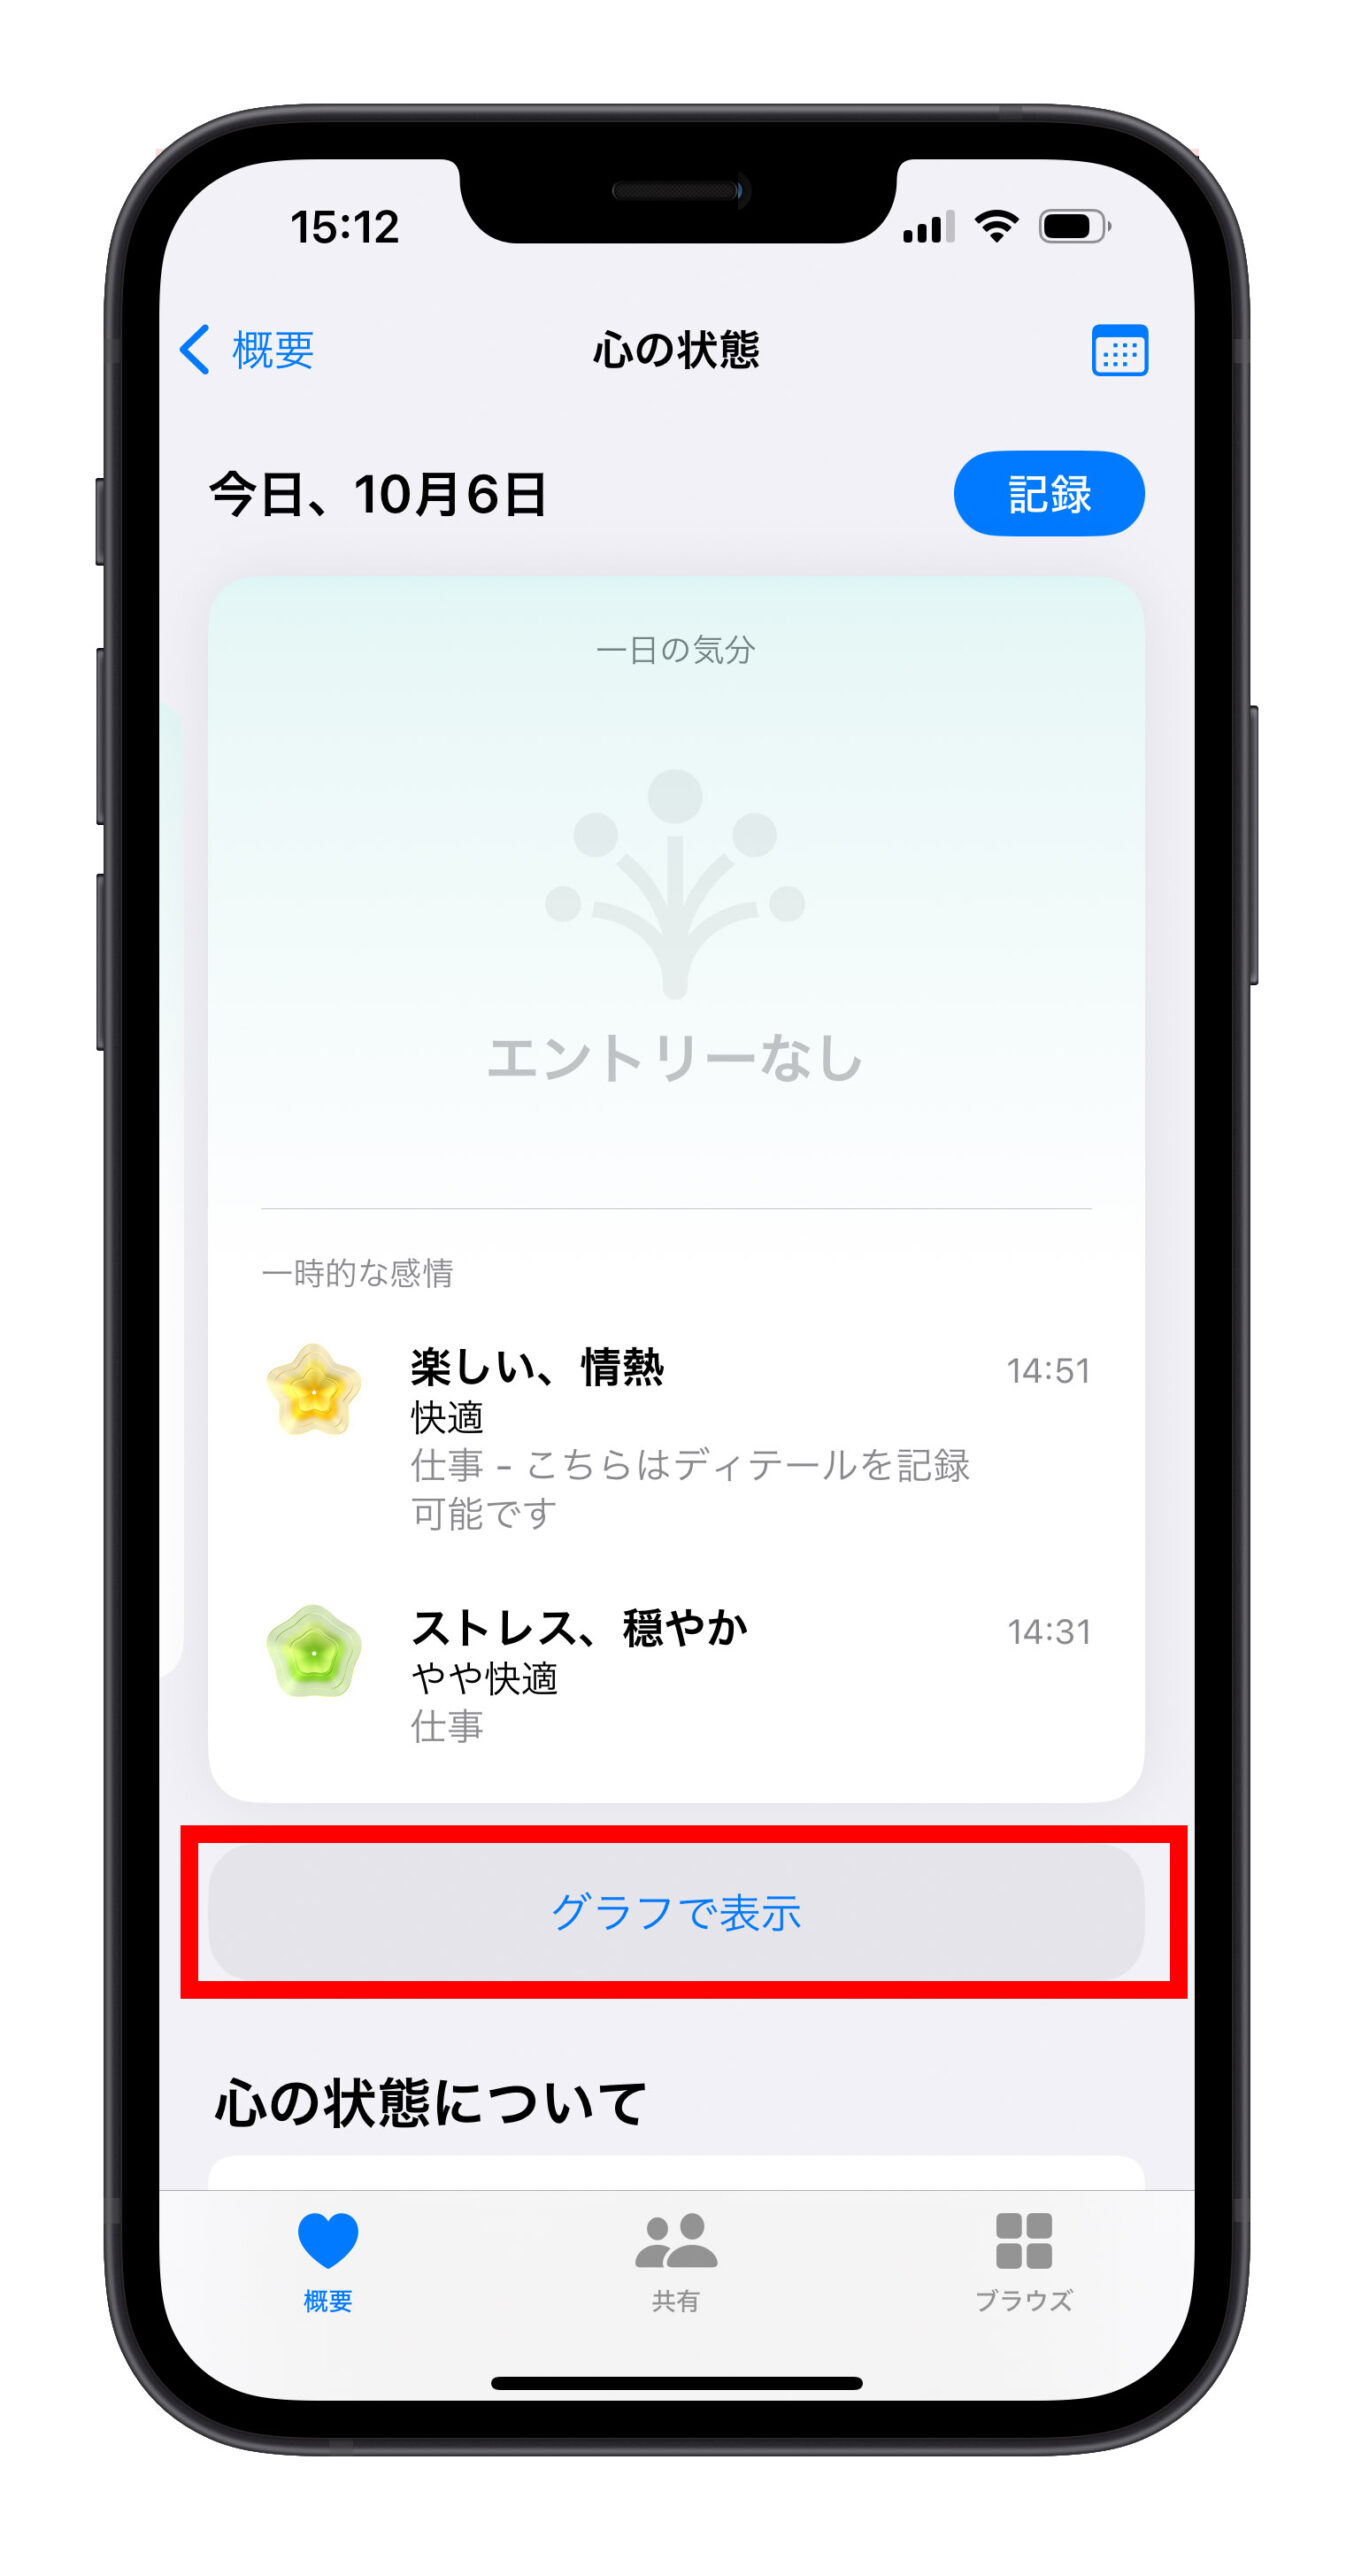 iOS 17 ヘルスケアアプリ 感情 気分 記録